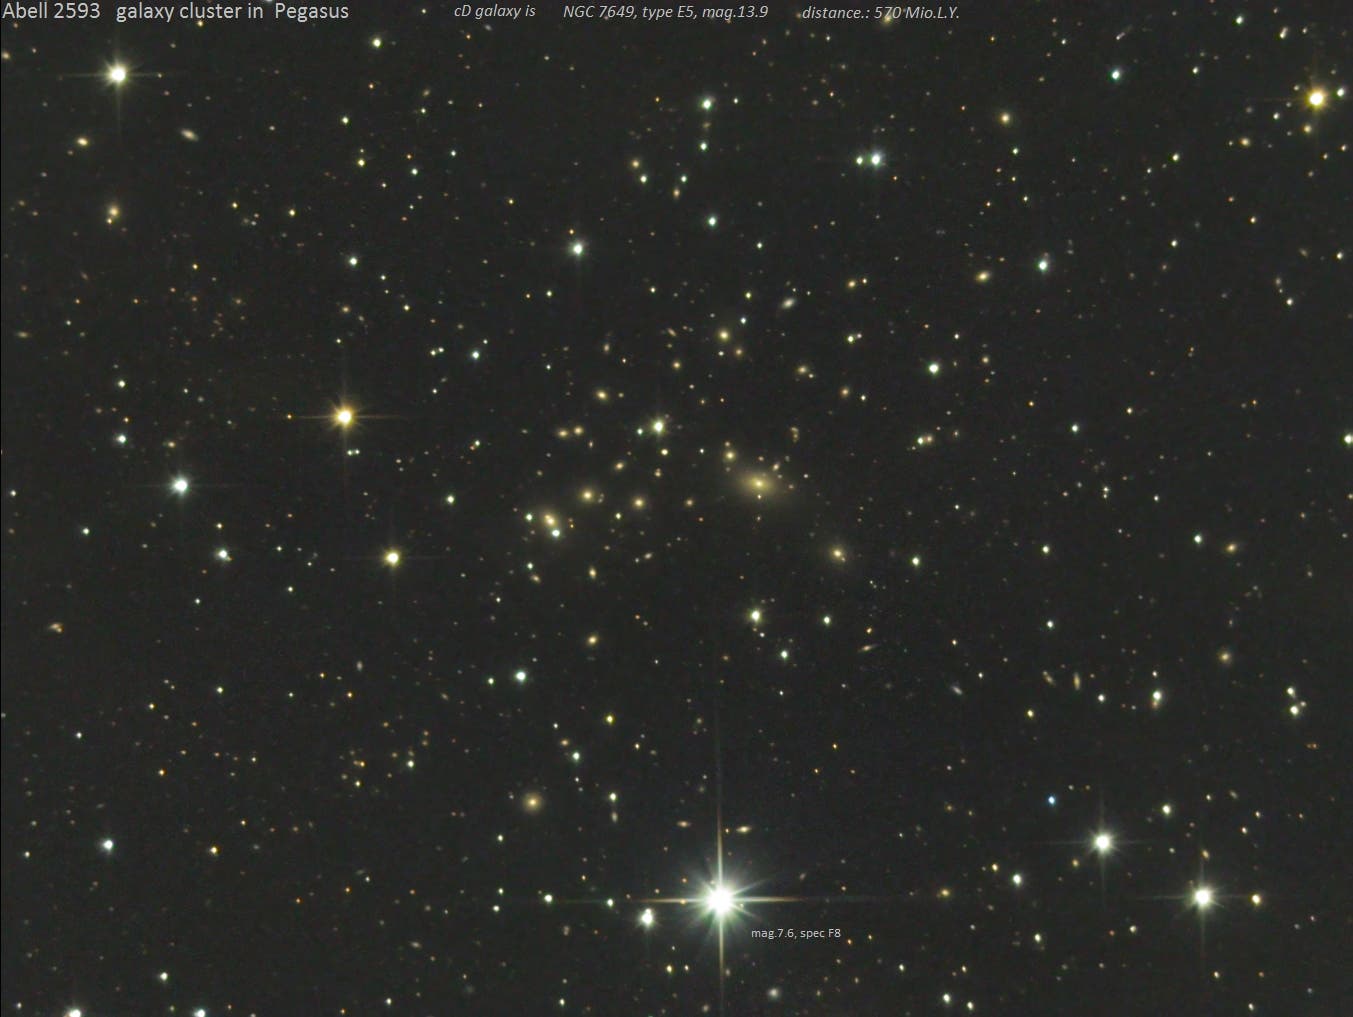 Abell 2593 - Galaxienhaufen im Pegasus